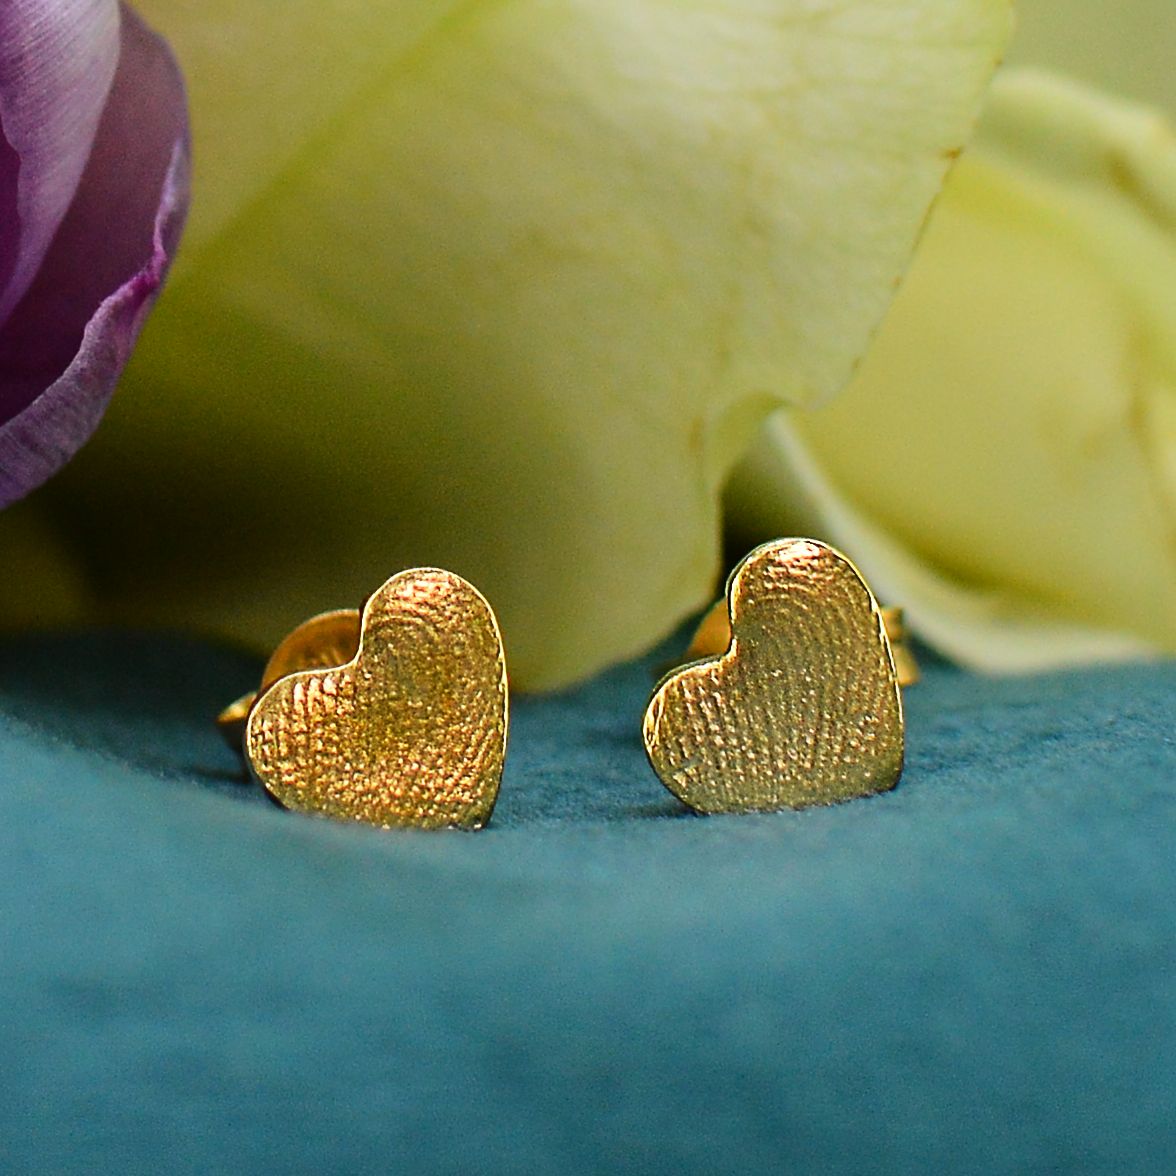 Heart Fingerprint Earrings in solid 18ct gold | Shown with 2 children's fingerprints | Custom made | Sophia Alexander Fingerprint Jewellery | Handmade in Suffolk UK